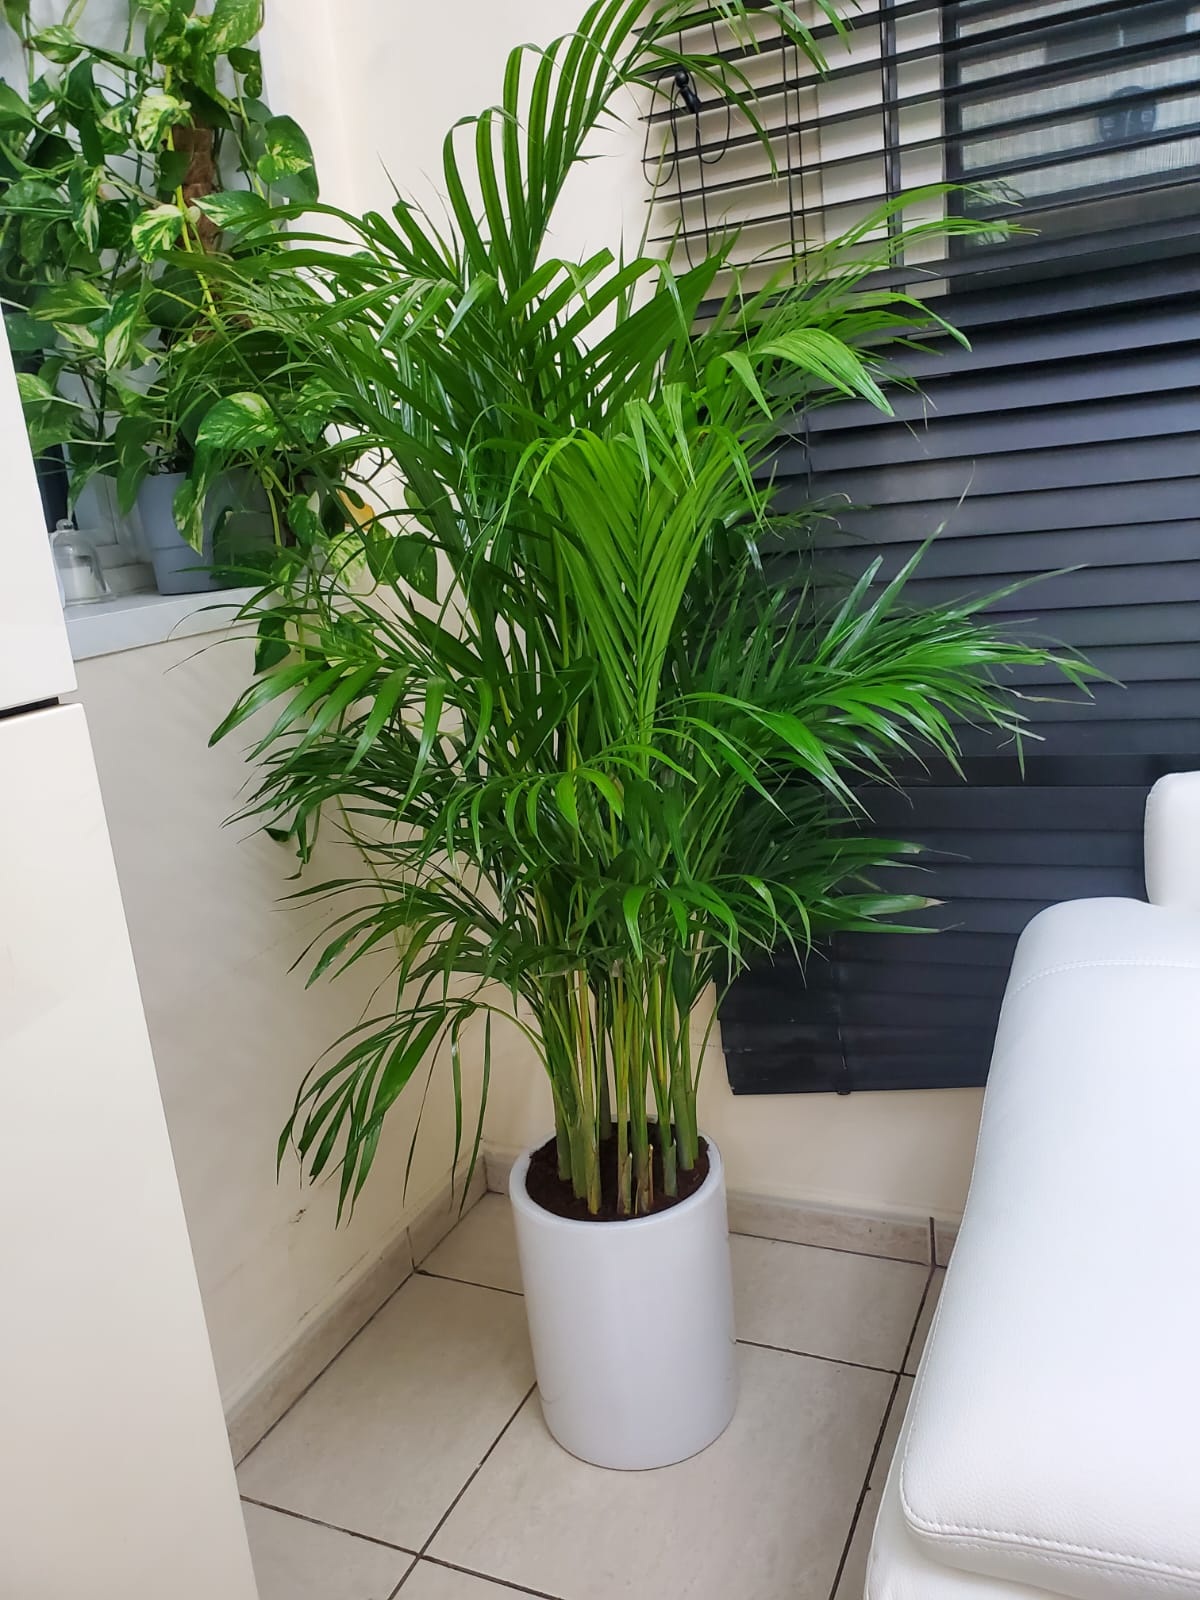 199DH Areca Palm Tree Bushy in Ceramic Pot PROMO